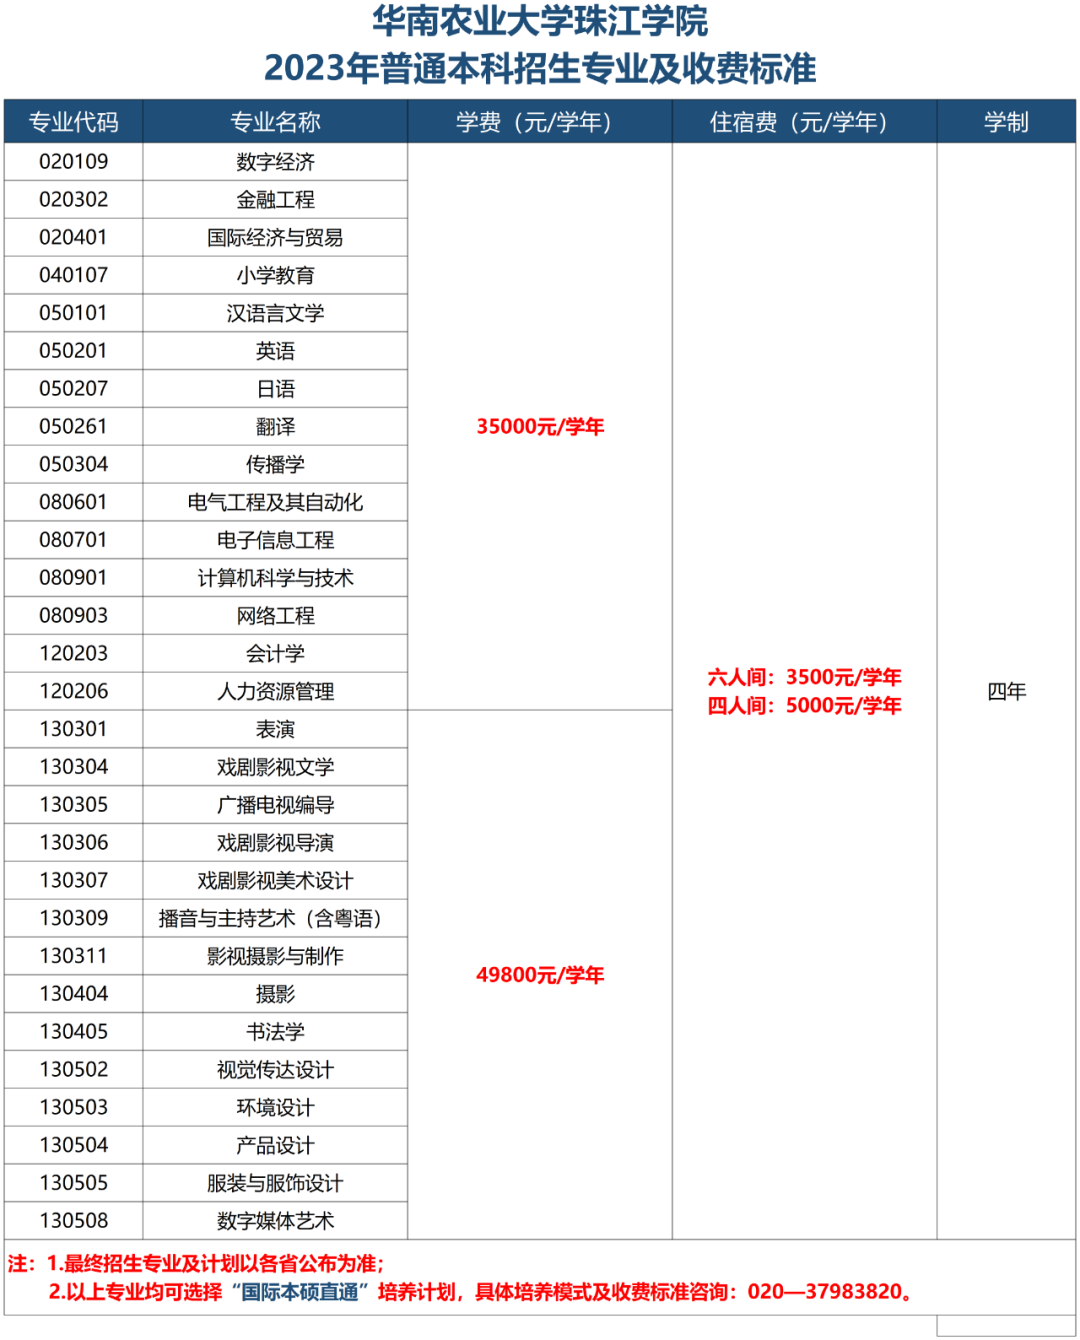 华南农业大学珠江学院2023年普通本科招生专业及收费标准